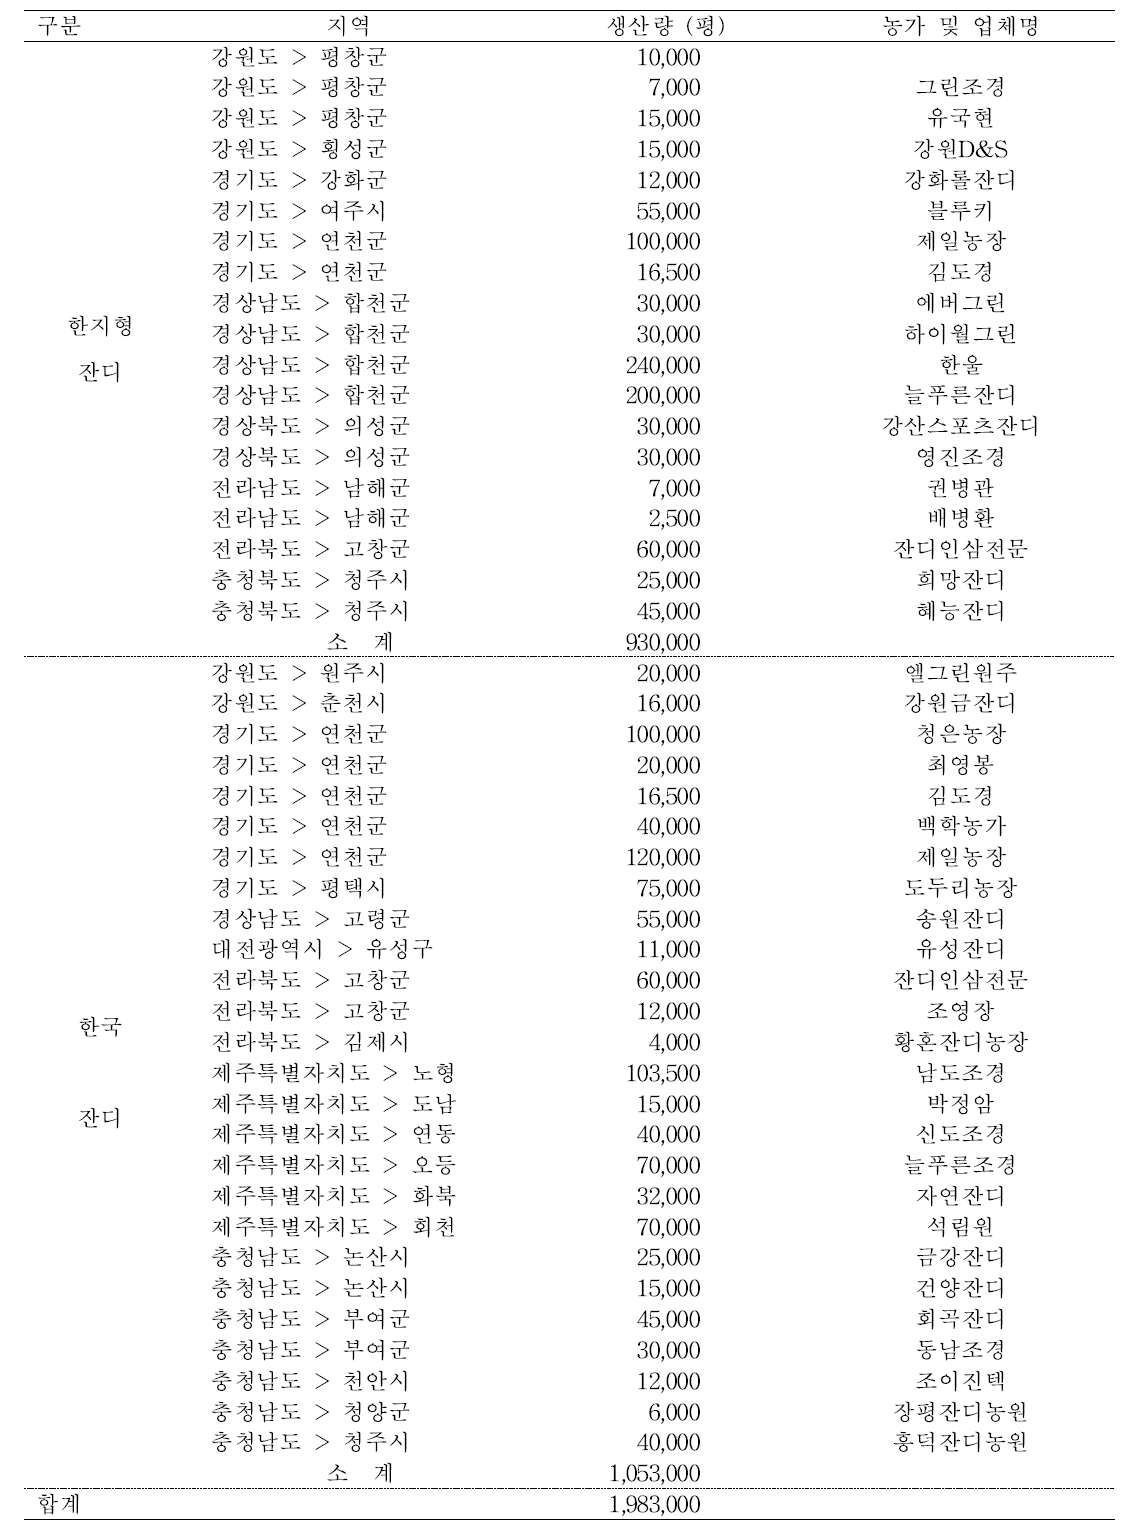 2014년 임산물생산조사 시군구별 미반영 잔디생산량과 업체명